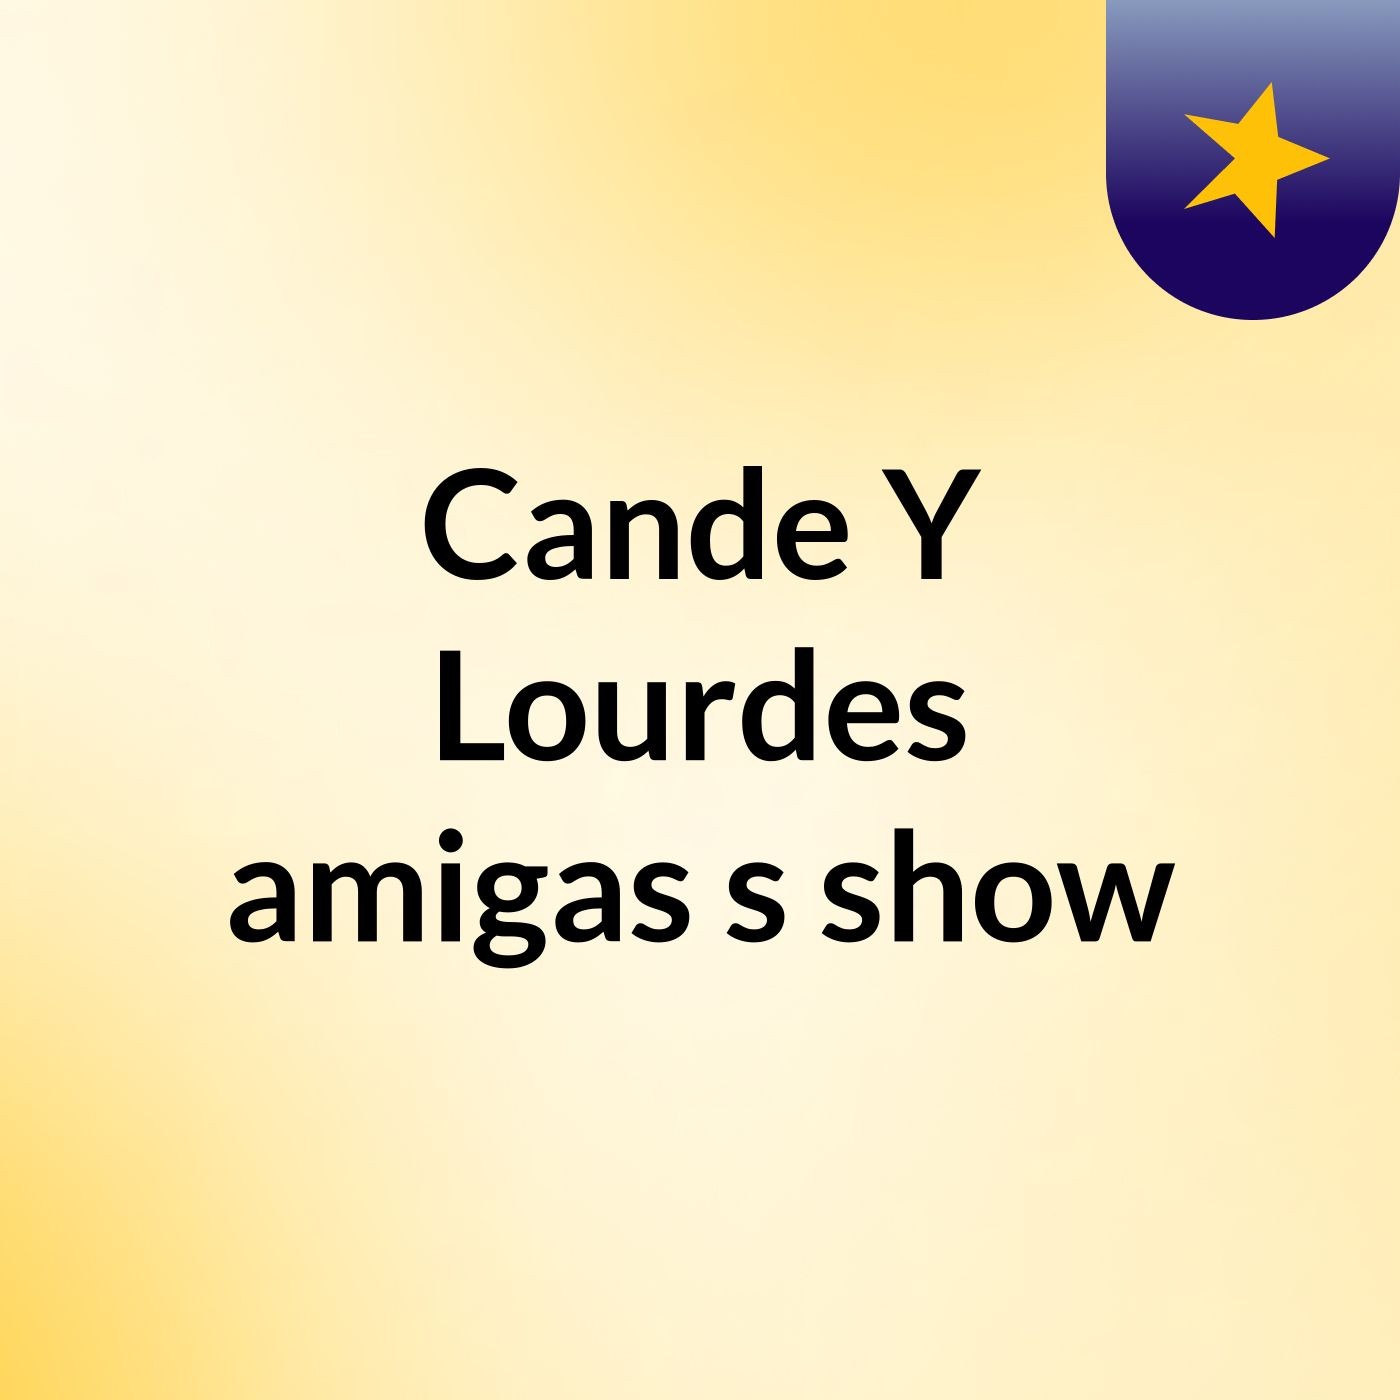 Cande Y Lourdes amigas's show